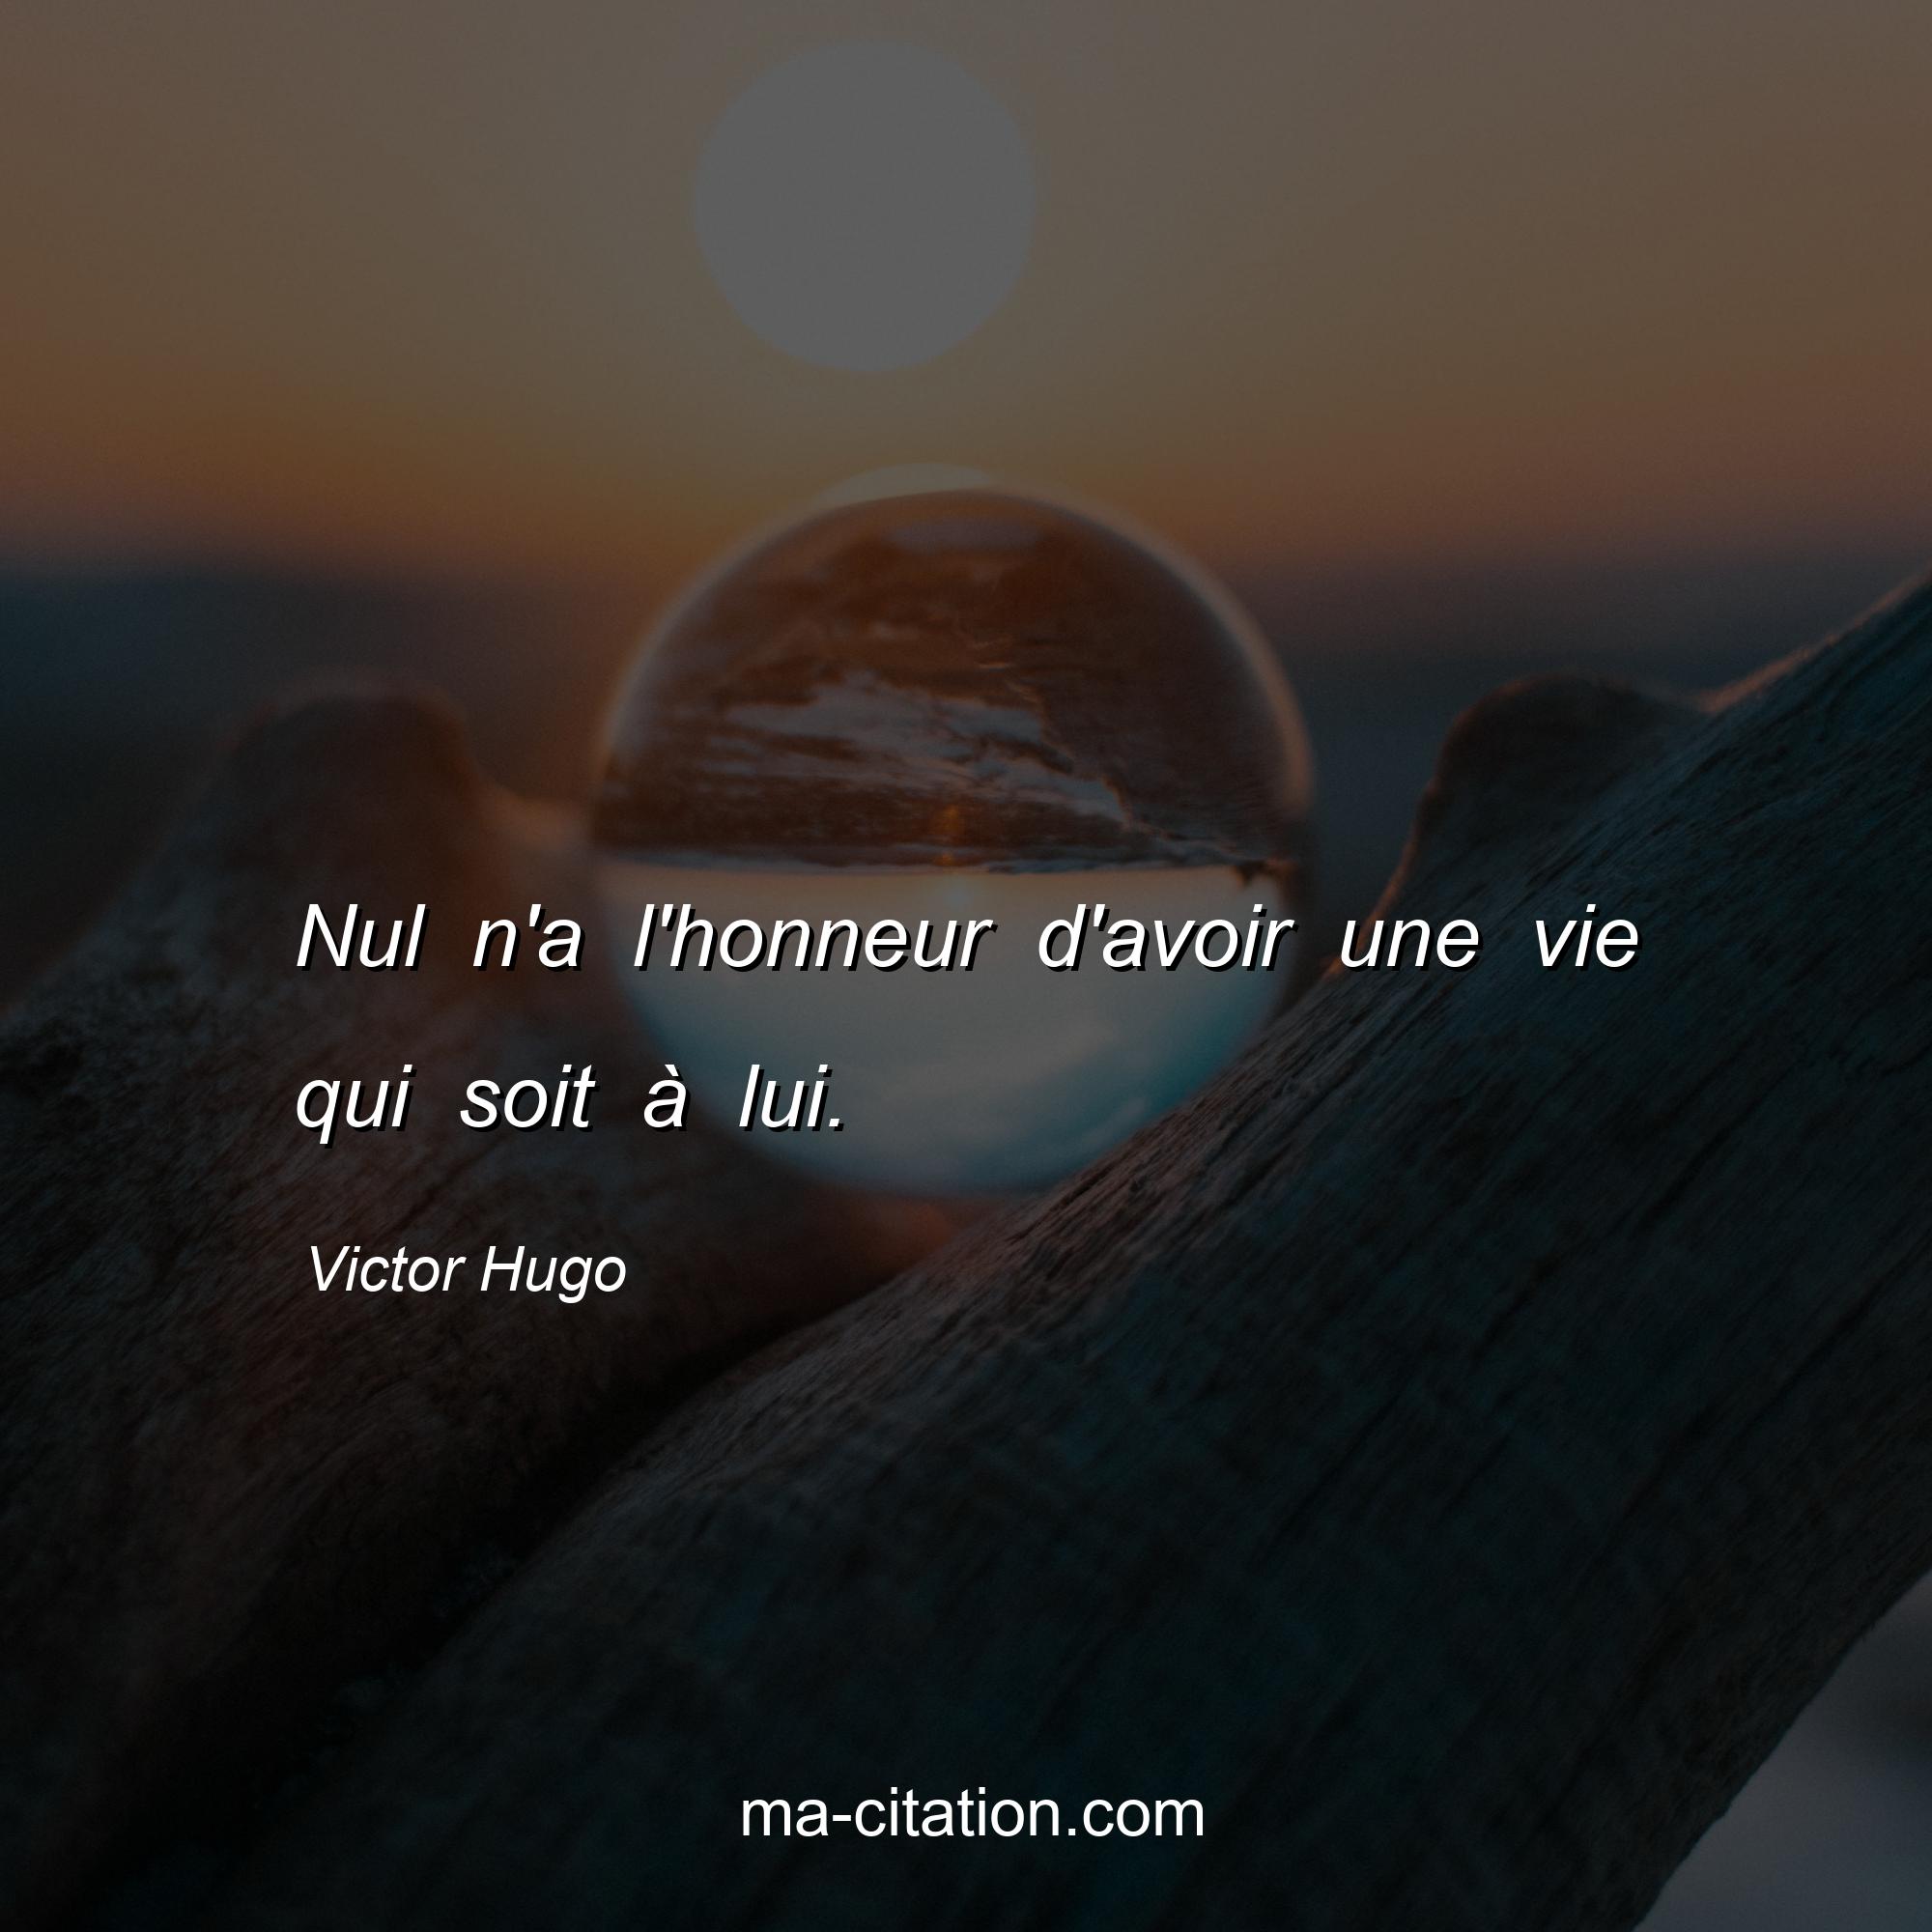 Victor Hugo : Nul n'a l'honneur d'avoir une vie qui soit à lui.